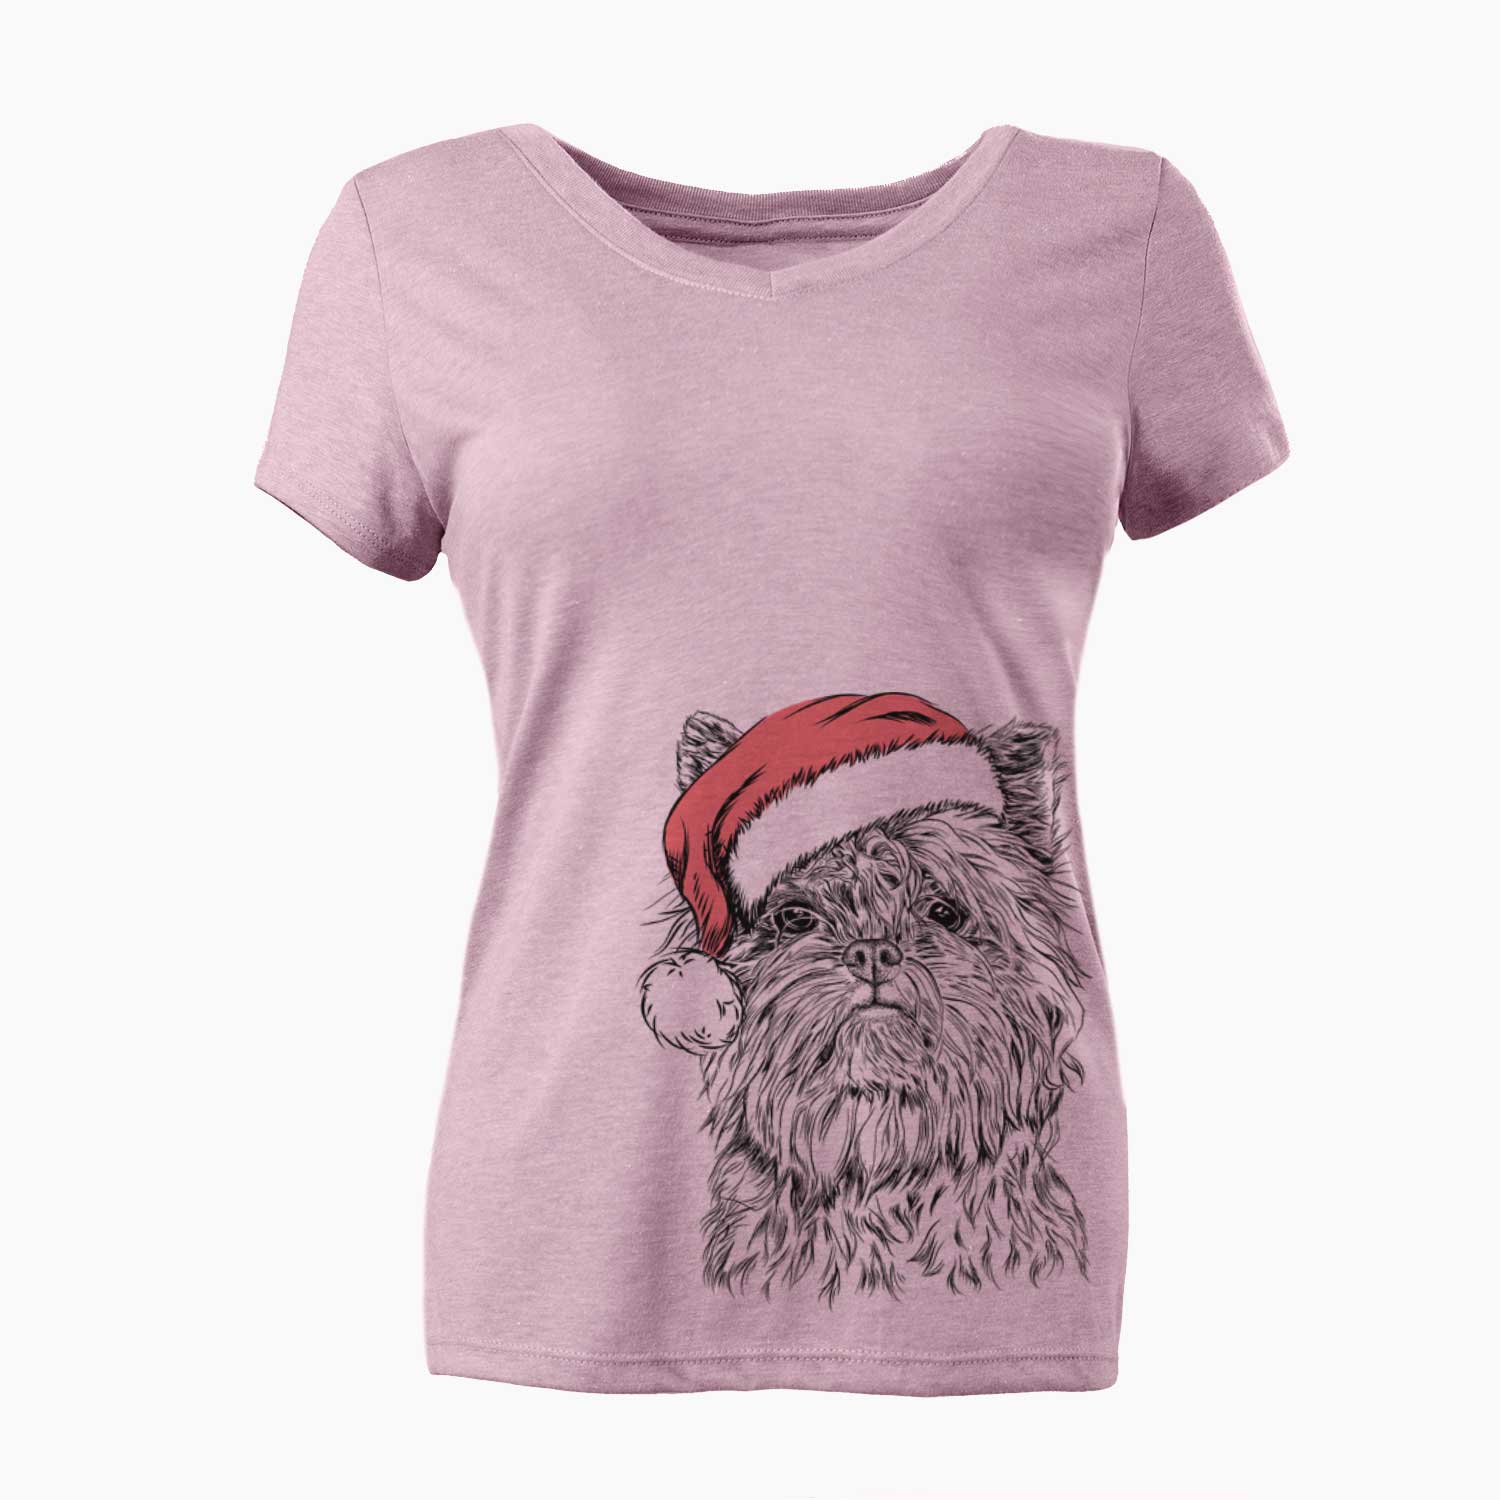 Santa Alvin the Affenpinscher - Women's Perfect V-neck Shirt